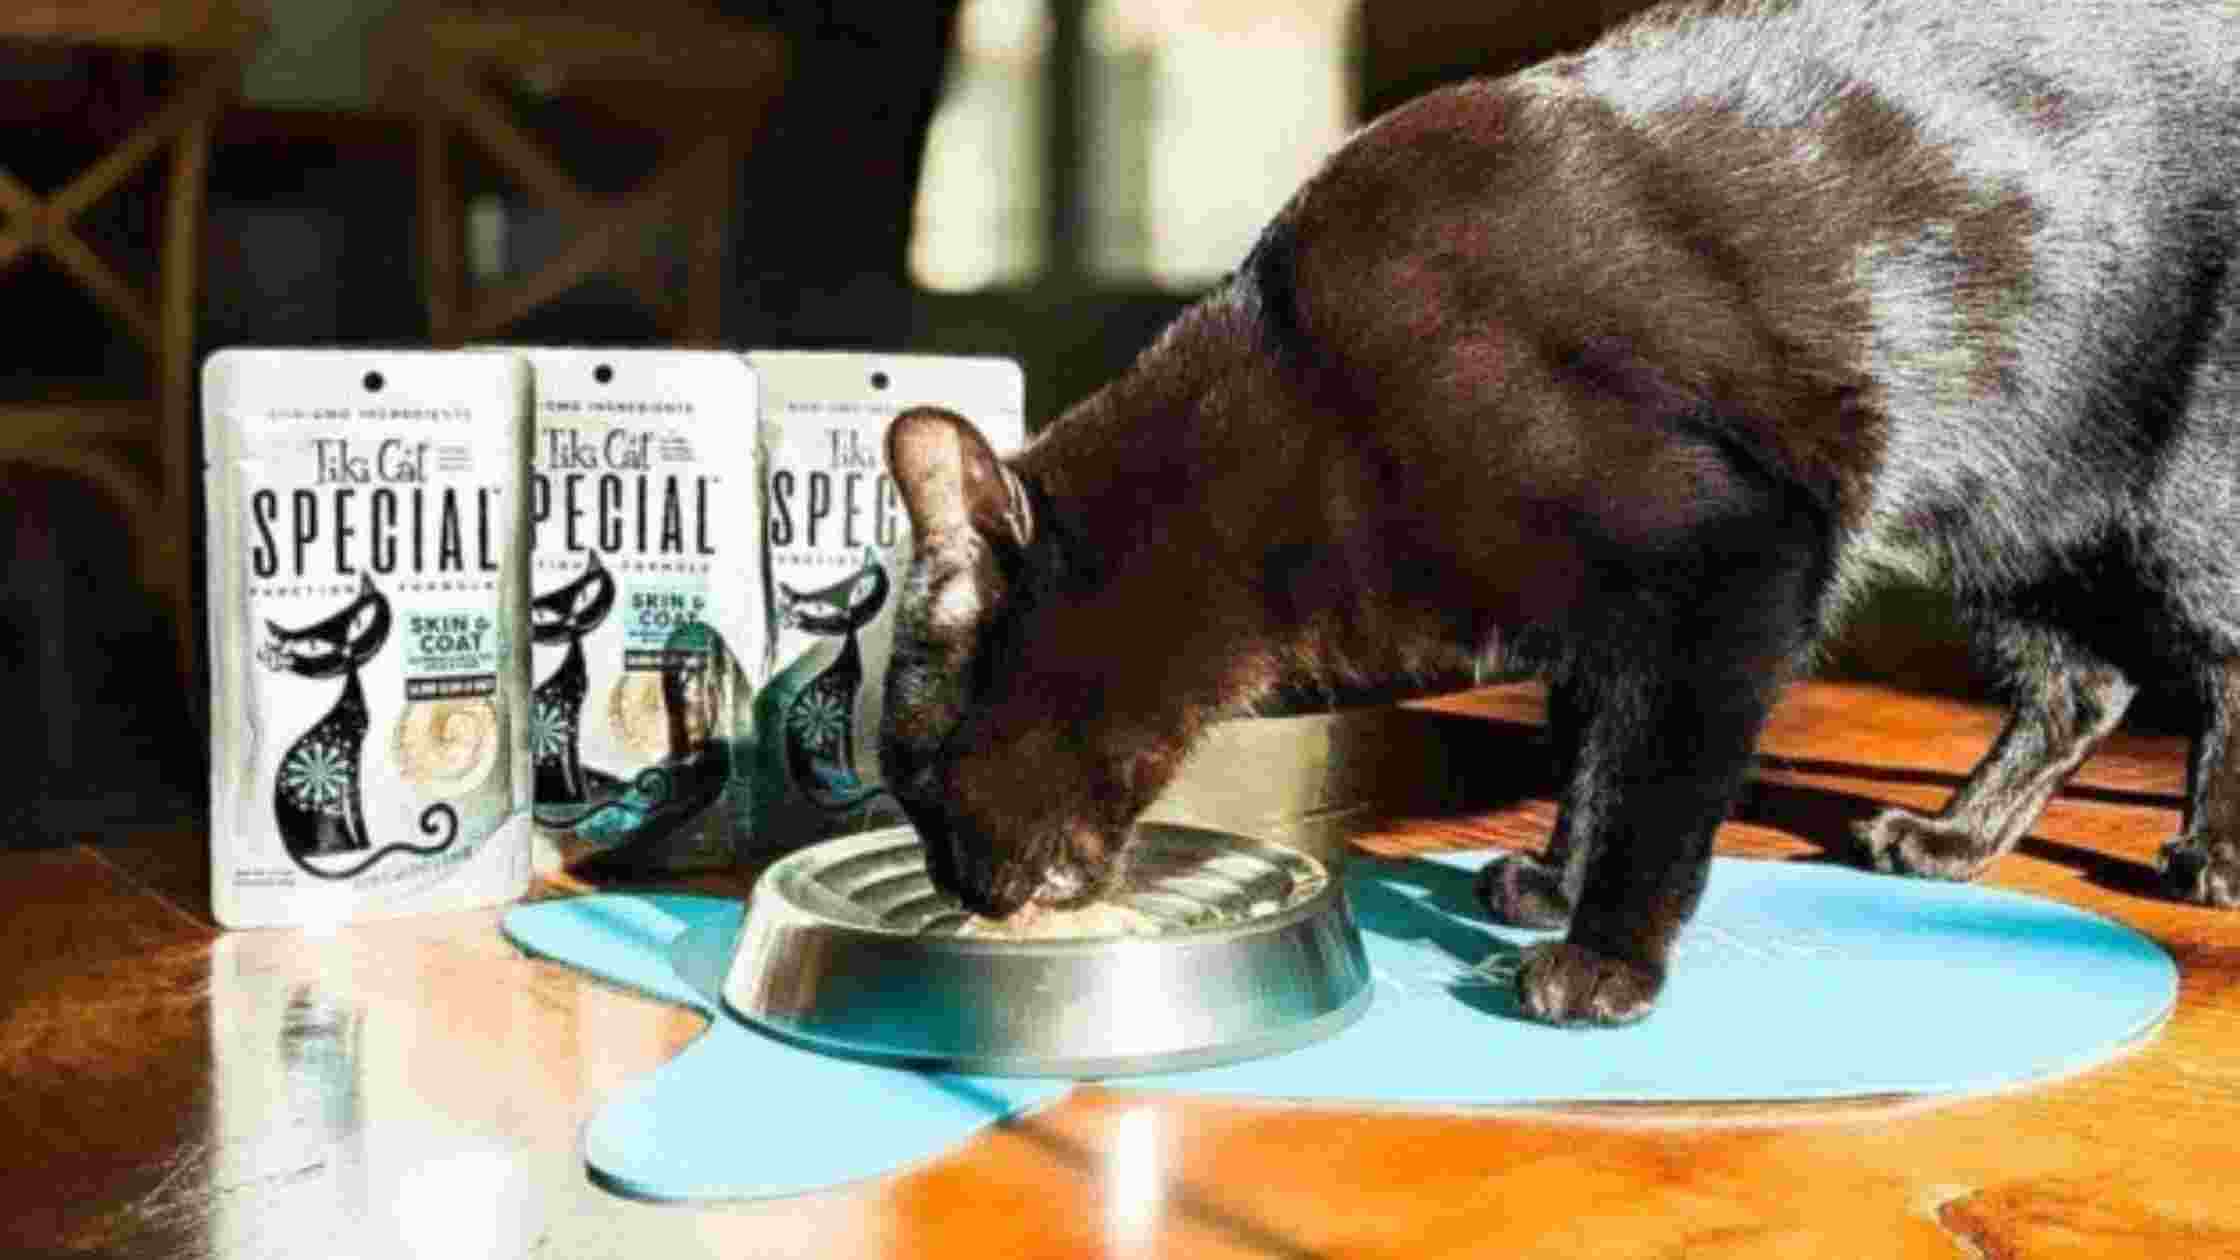 Tiki Cat Food Recall